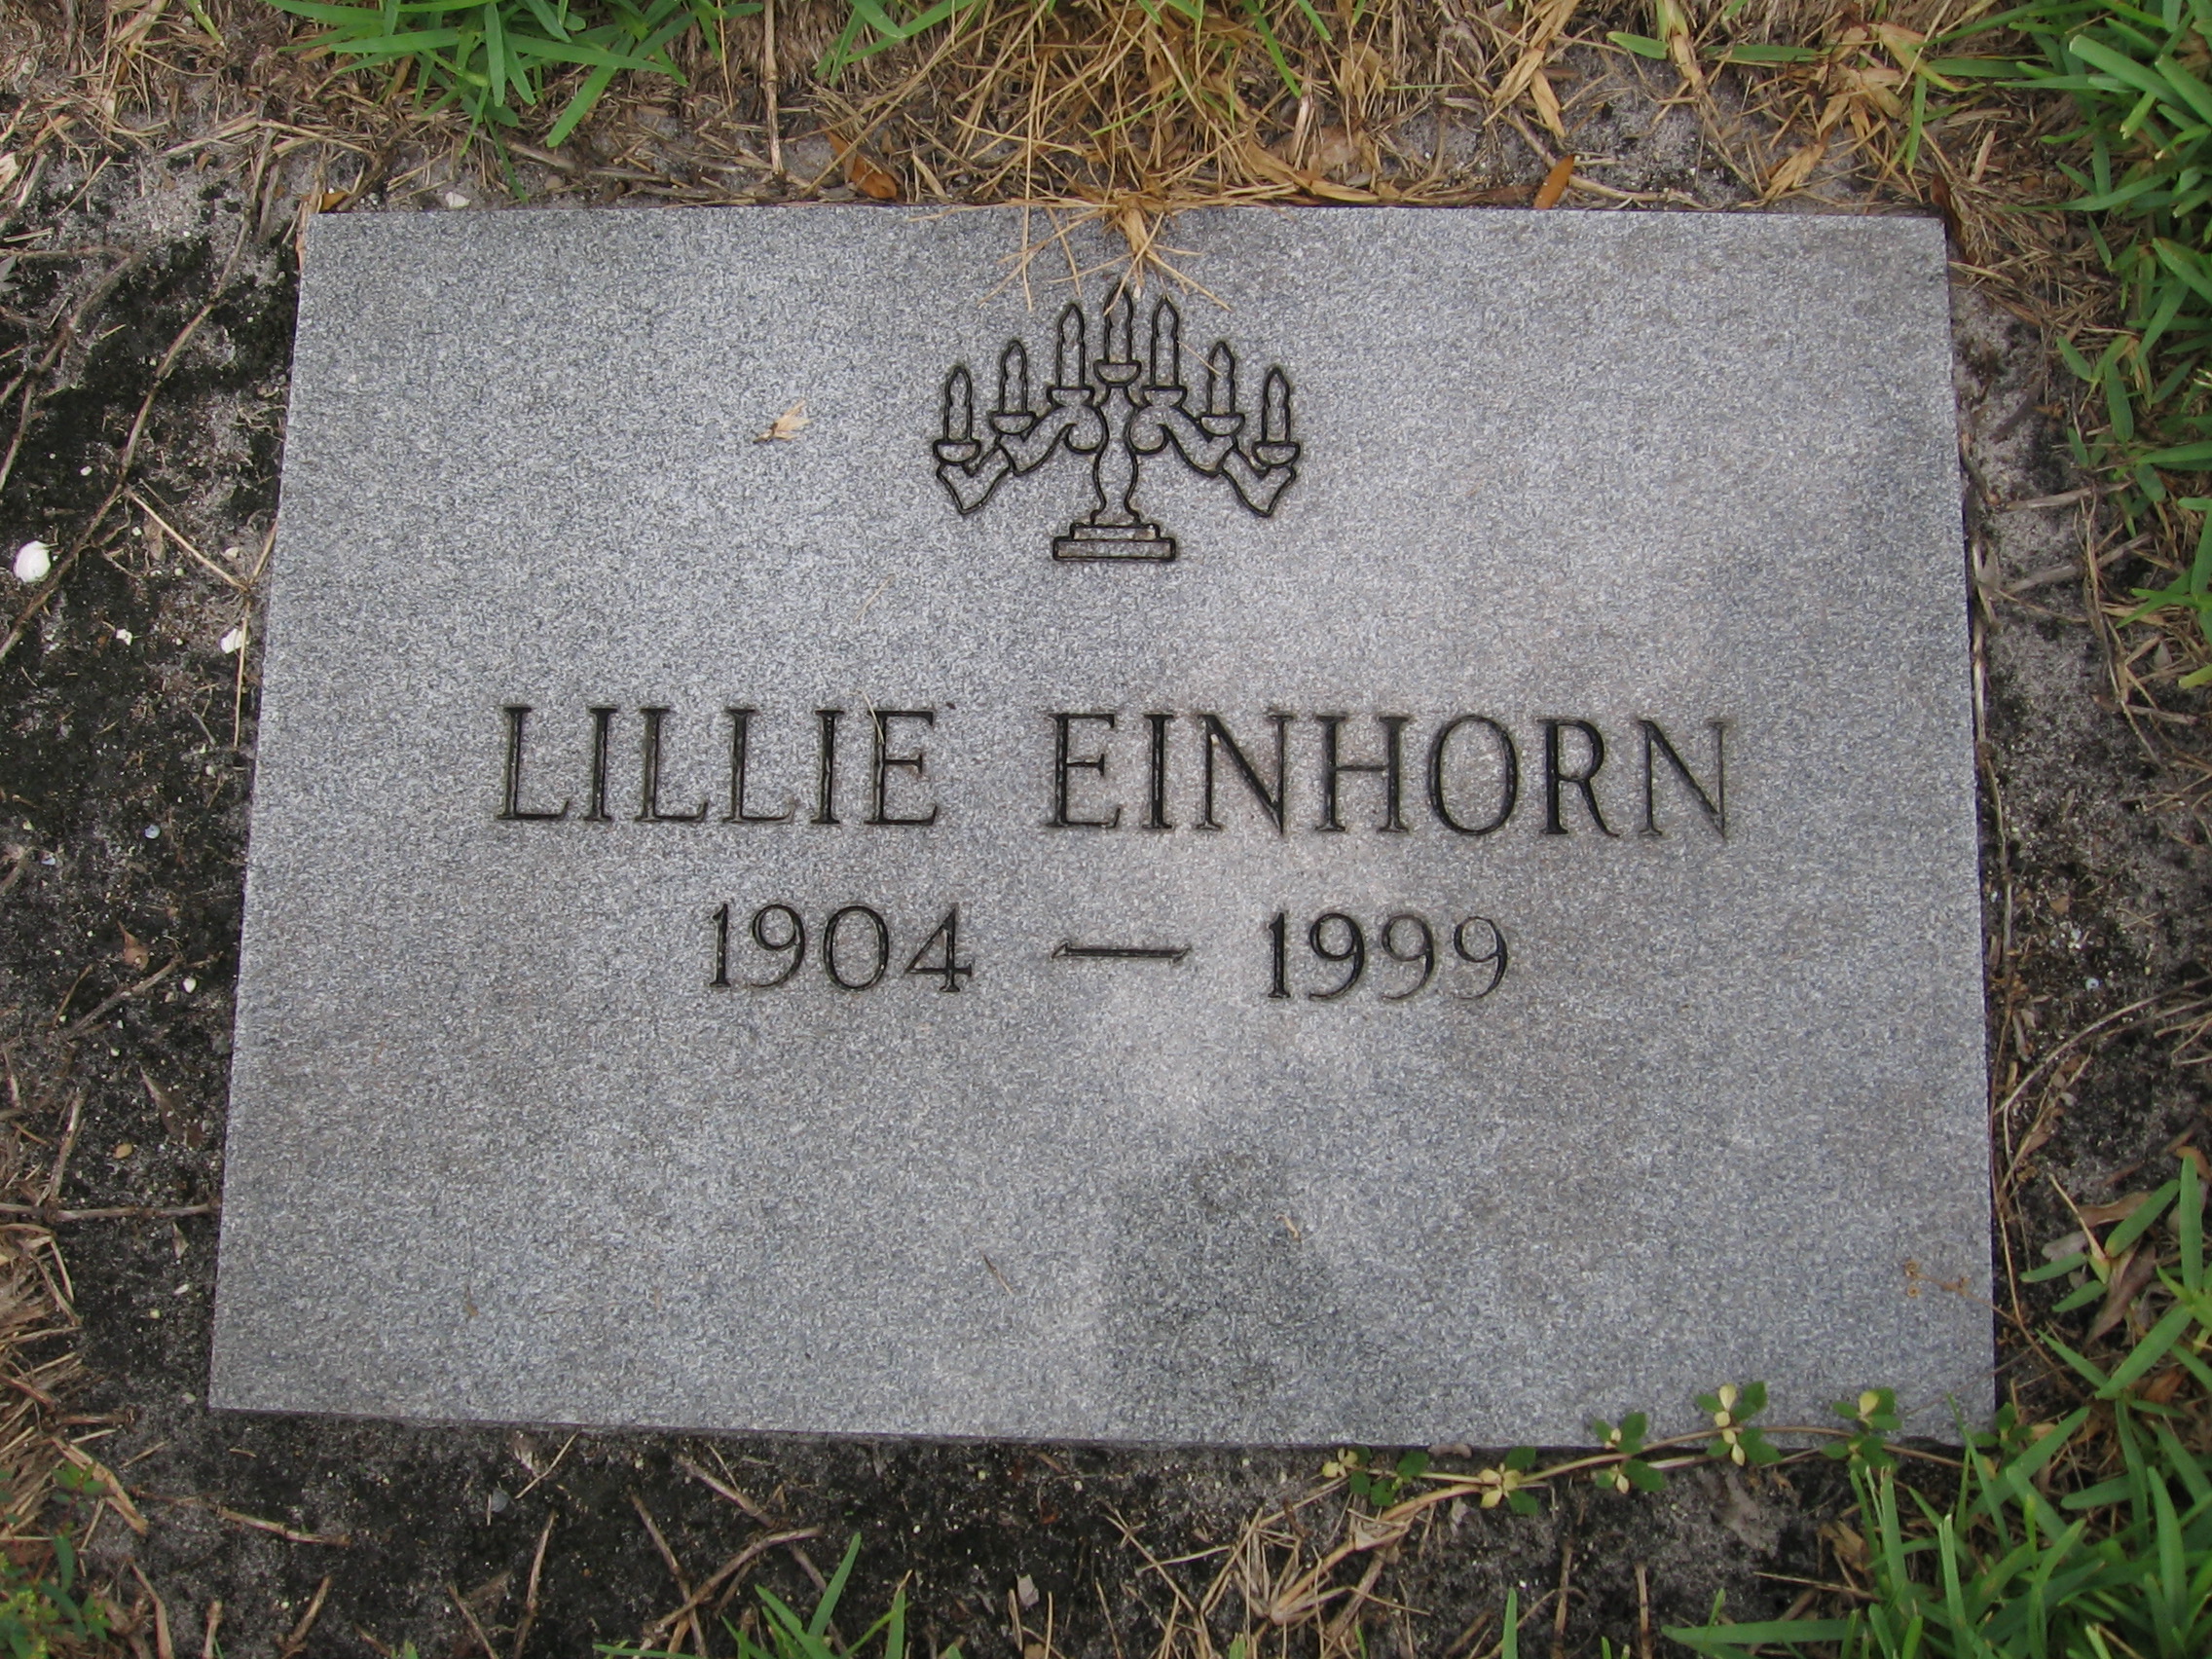 Lillie Einhorn